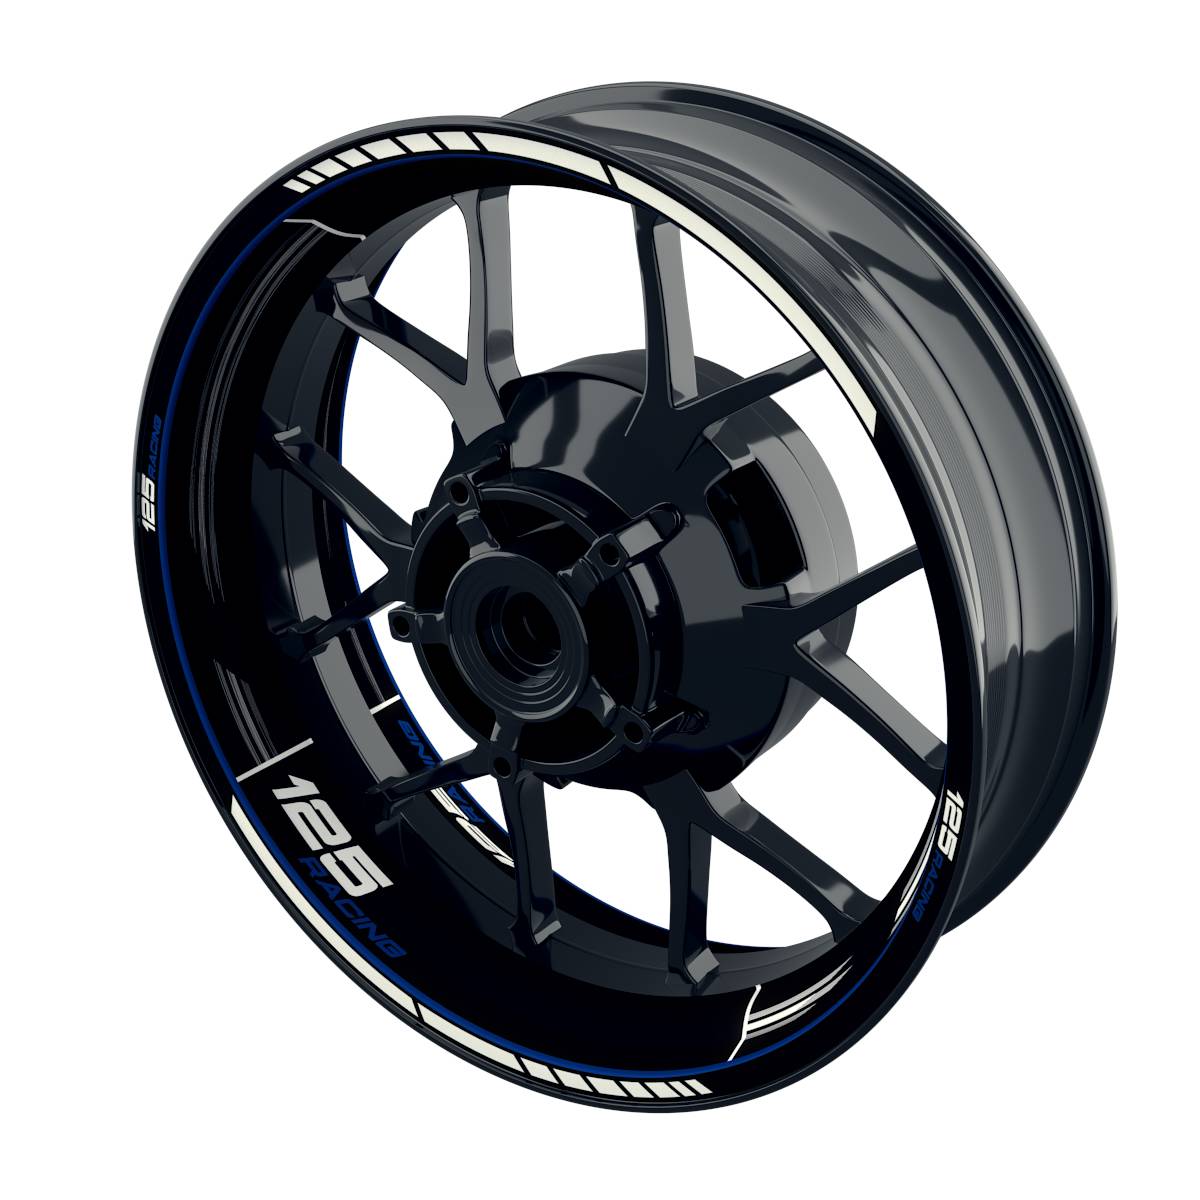 125 Racing Rim Decals Scratched Wheelsticker Premium